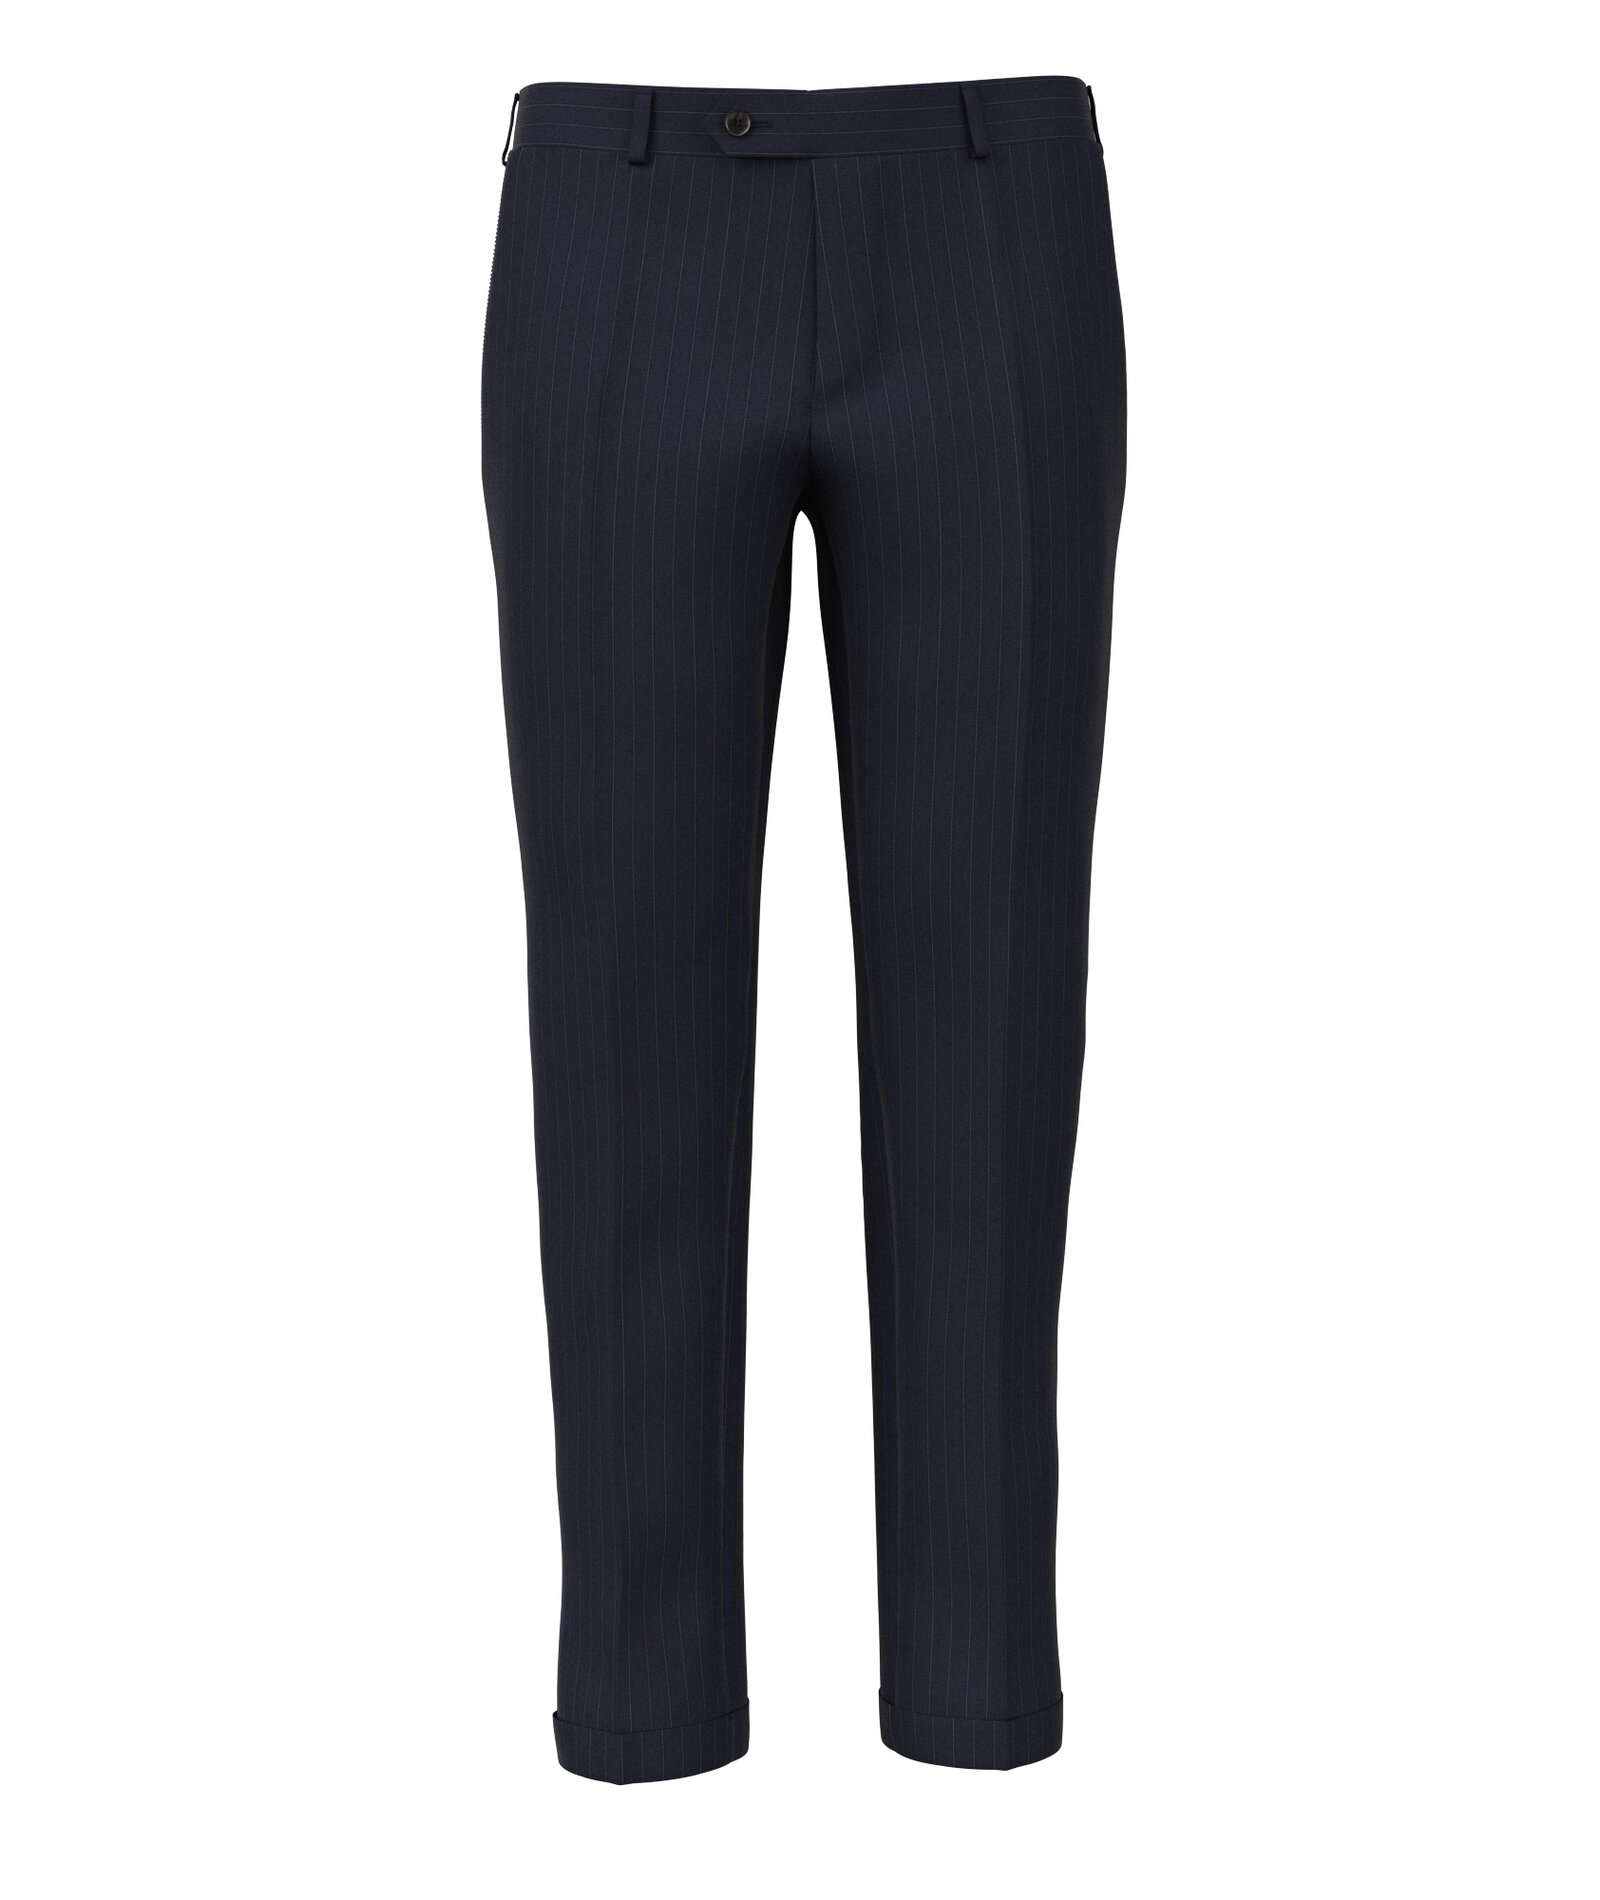 Image of Pantaloni da uomo su misura, Loro Piana, Blu in Twill di Lana 150s, Quattro Stagioni | Lanieri